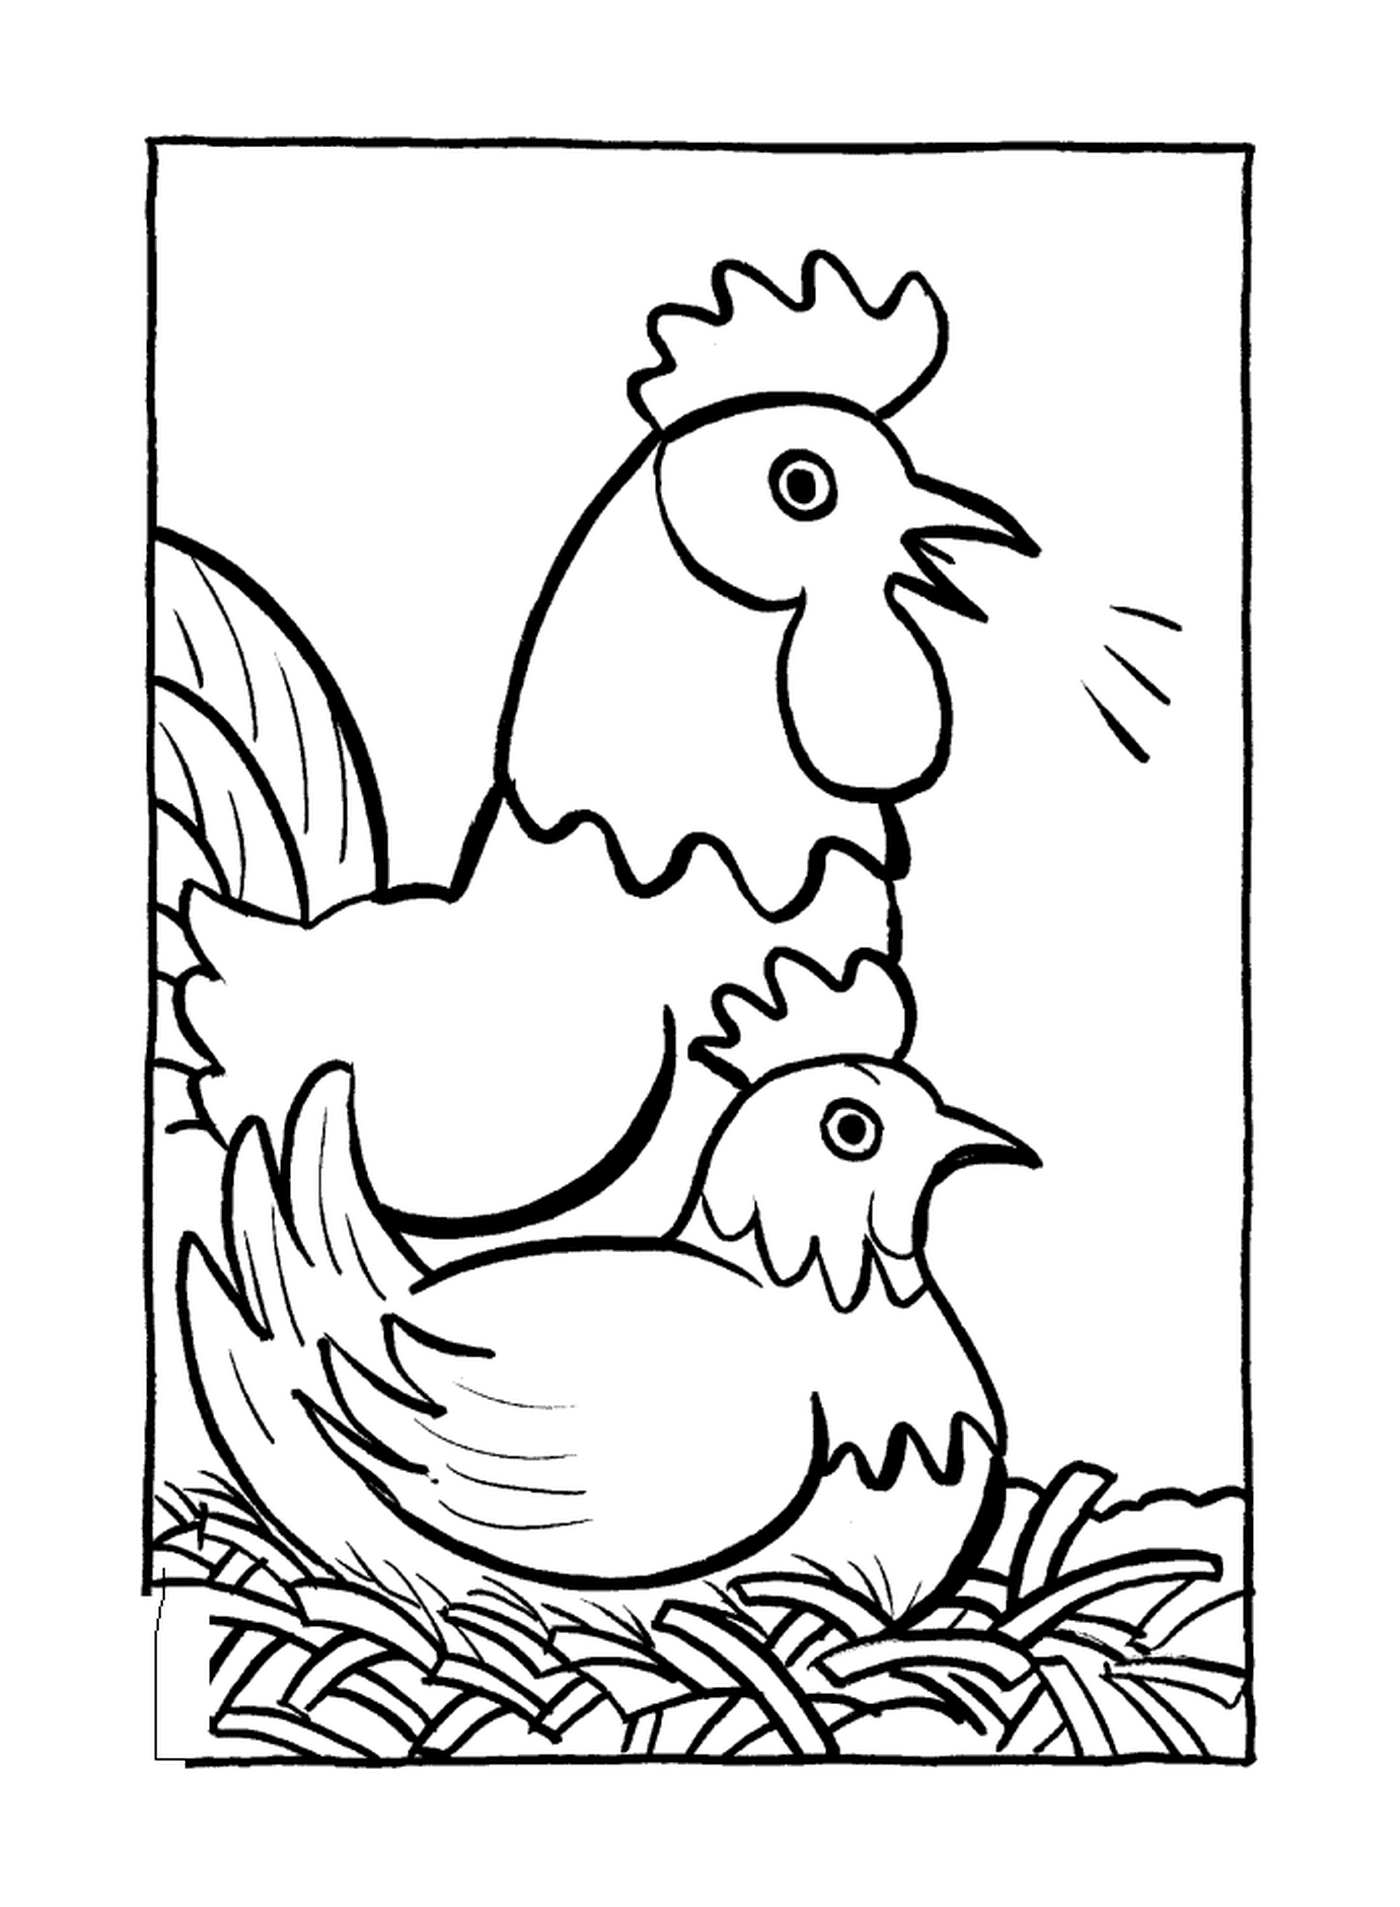  Two chickens rib 